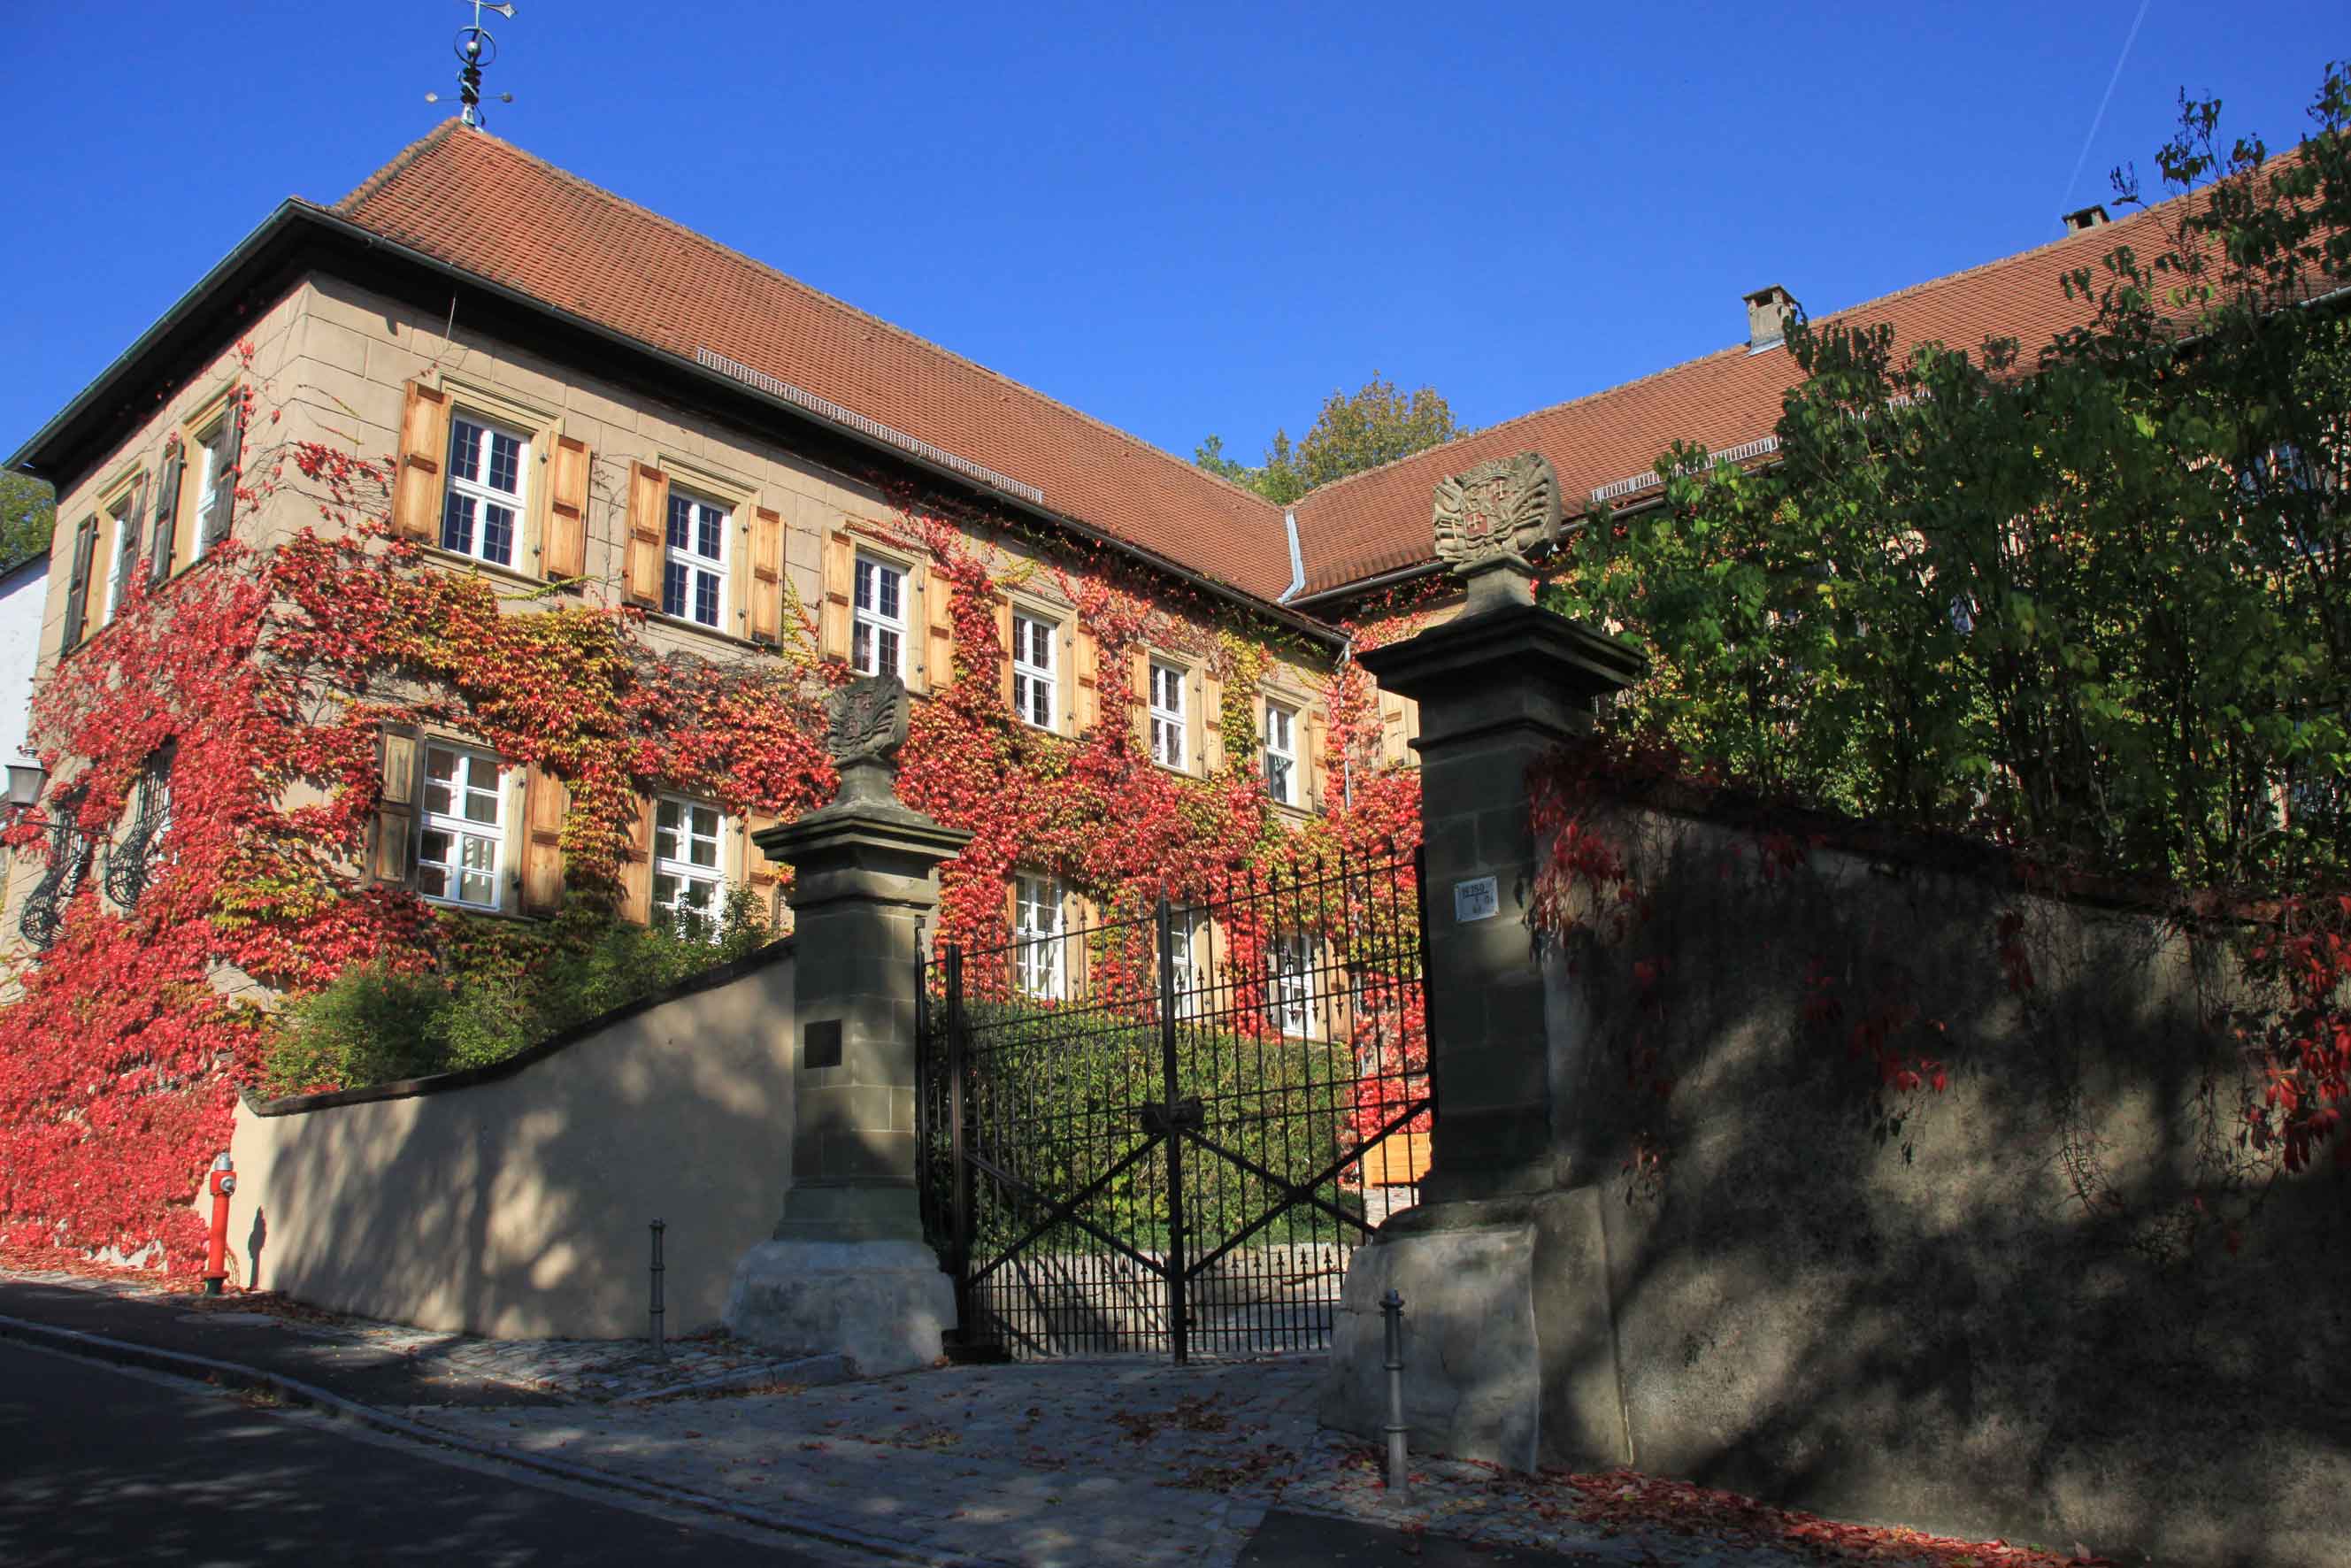 Freiherrlich v. Pölnitzsches Schloss in Aschbach